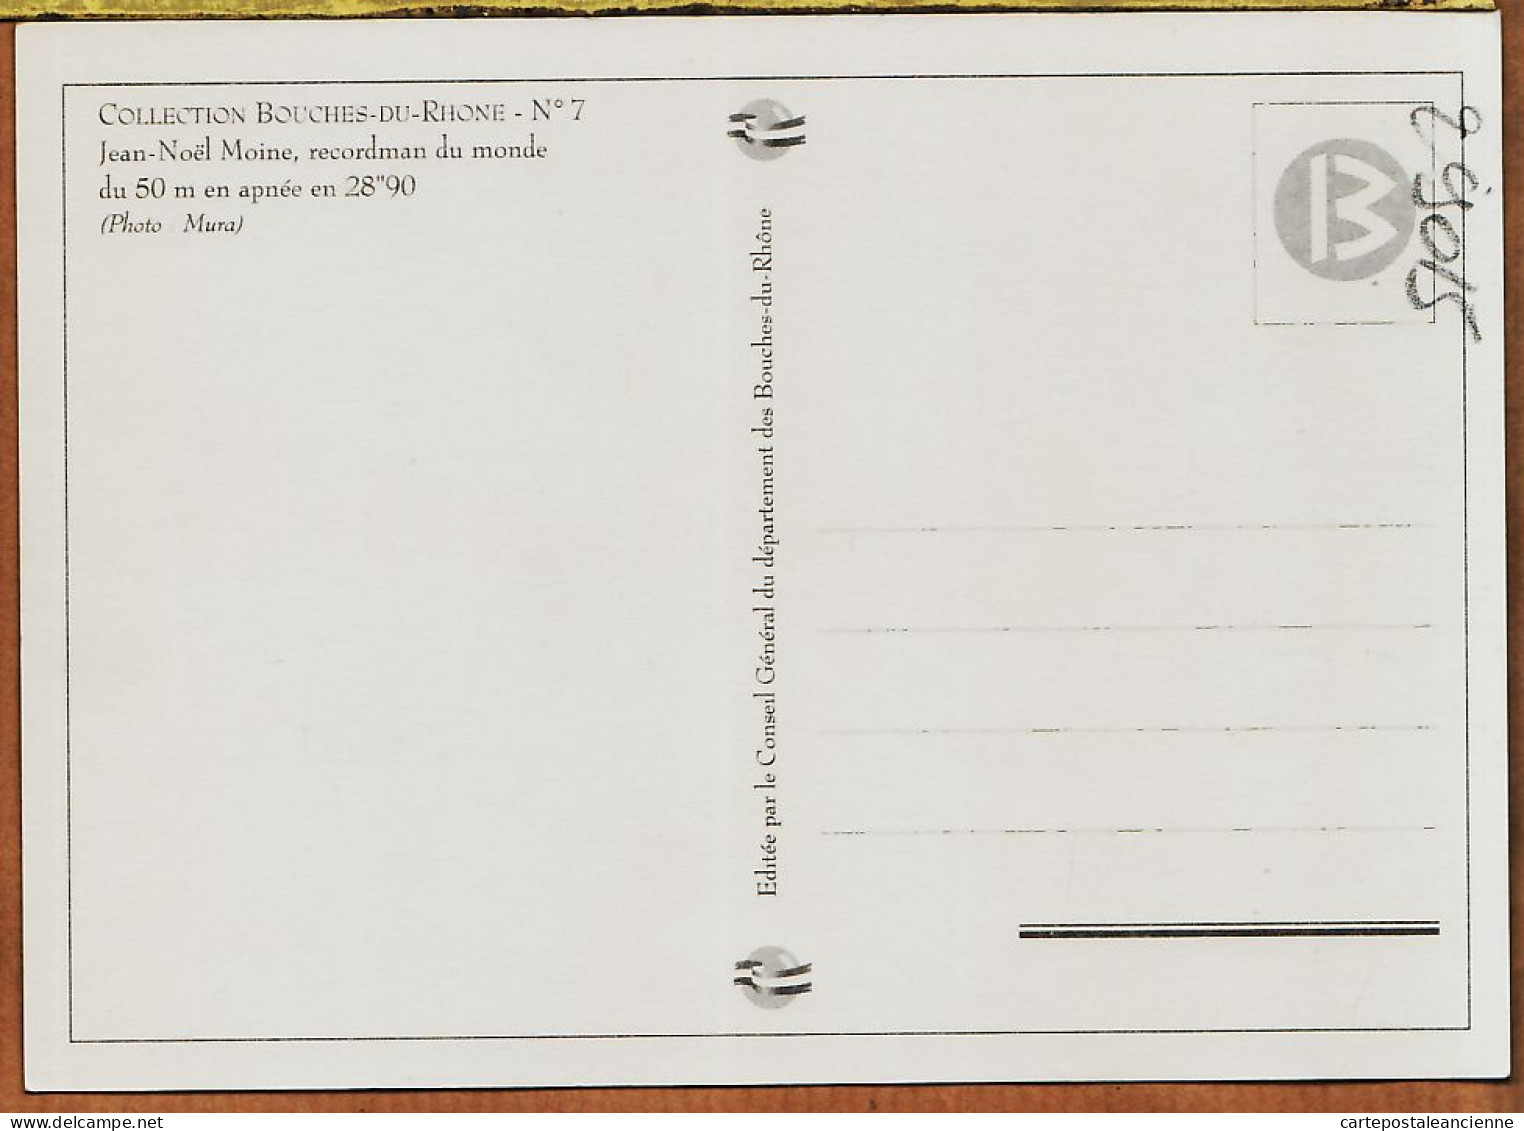 04811 / MARSEILLE Jean-Noël MOINE Recordman Du Monde 50 M Apnée 28"90 Photo MURA Collection BOUCHES Du RHONE N°7 - Natation